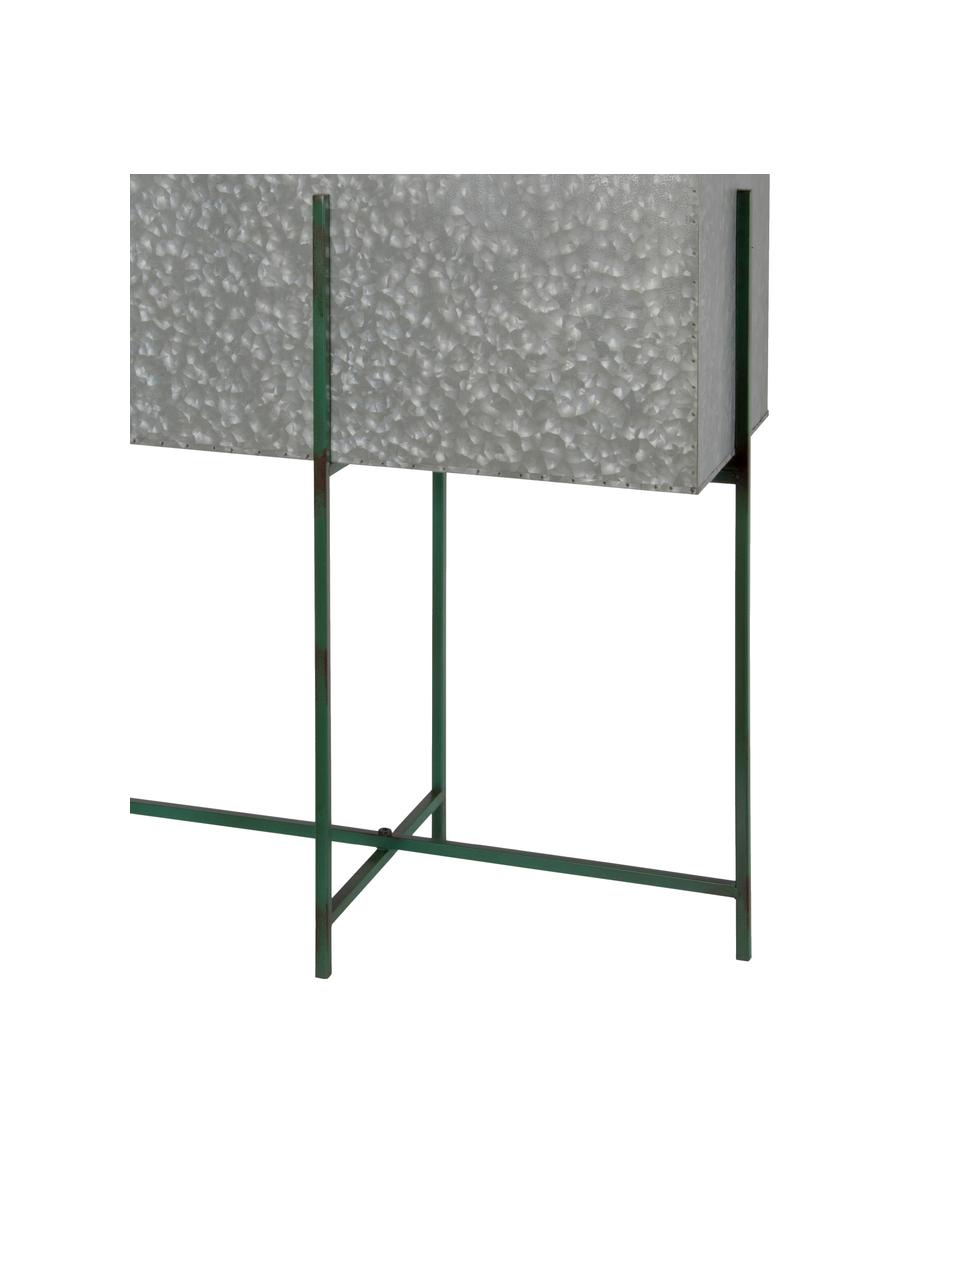 XL Übertopf-Set Squares mit Gestell, 2-tlg., Metall, beschichtet, Grau, Grün, Set mit verschiedenen Größen